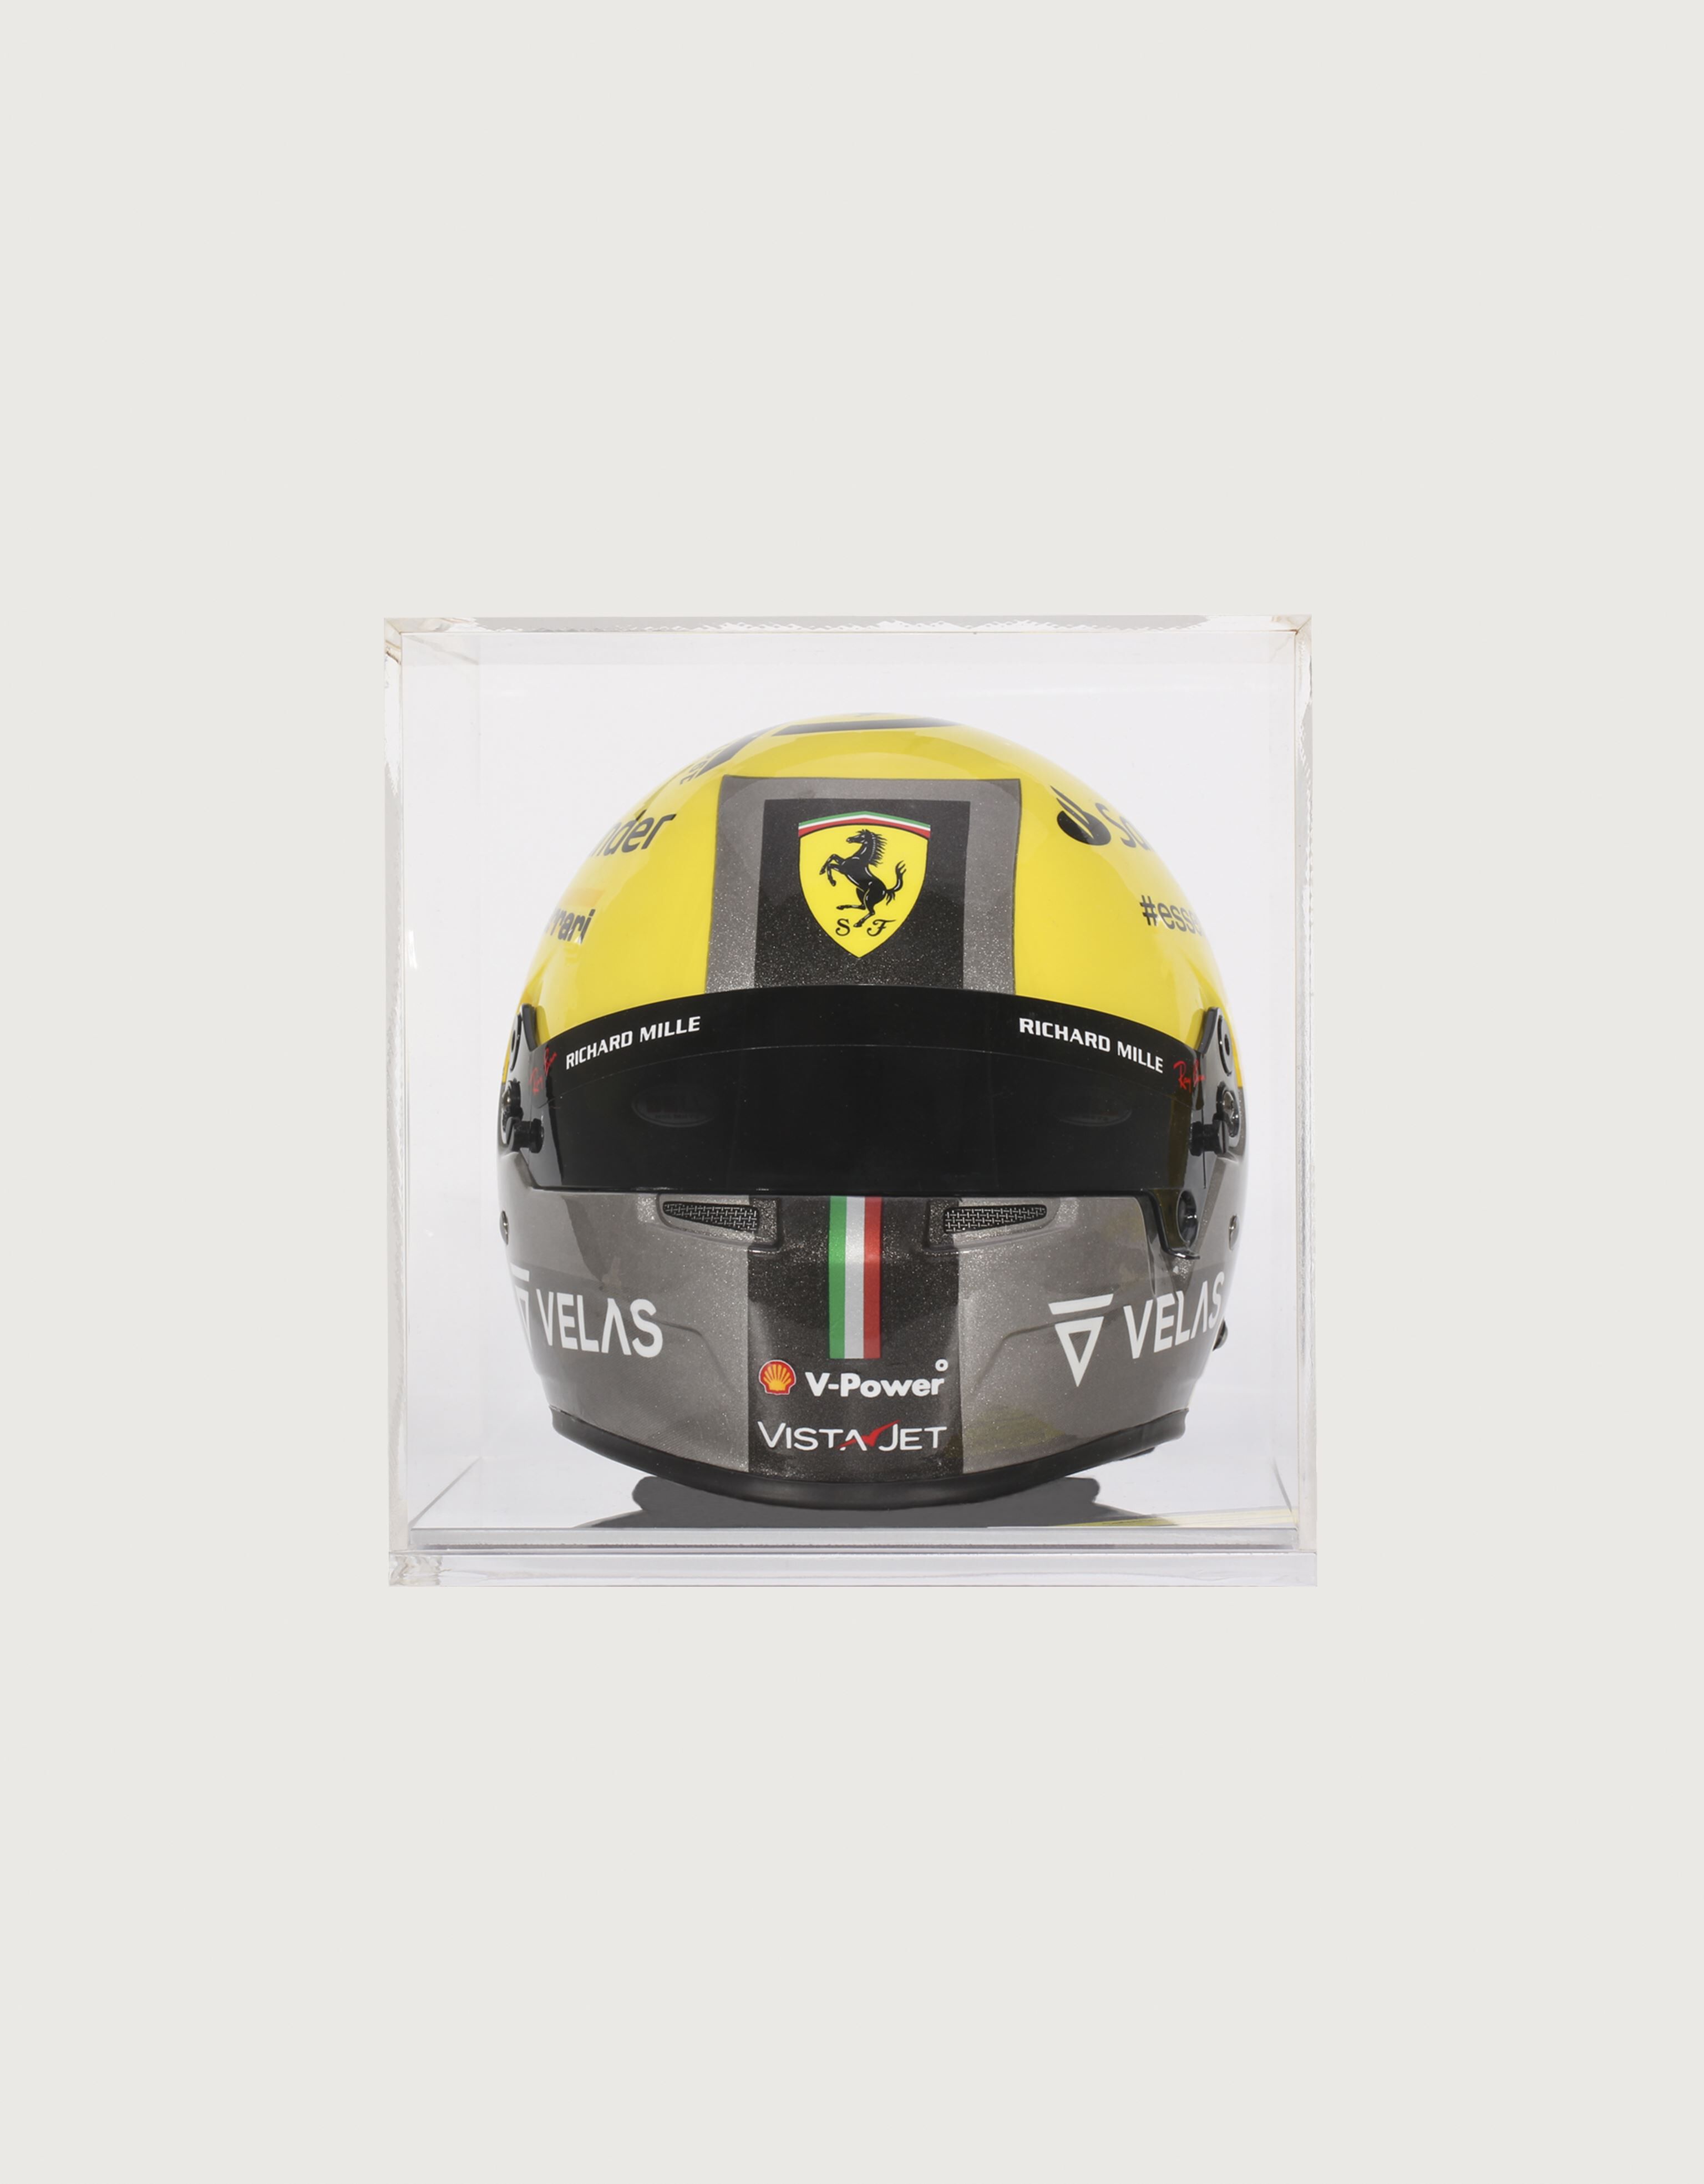 Ferrari Carlos Sainz Giallo Modena Special Edition mini helmet in 1:2 scale MULTICOLOUR 48730f